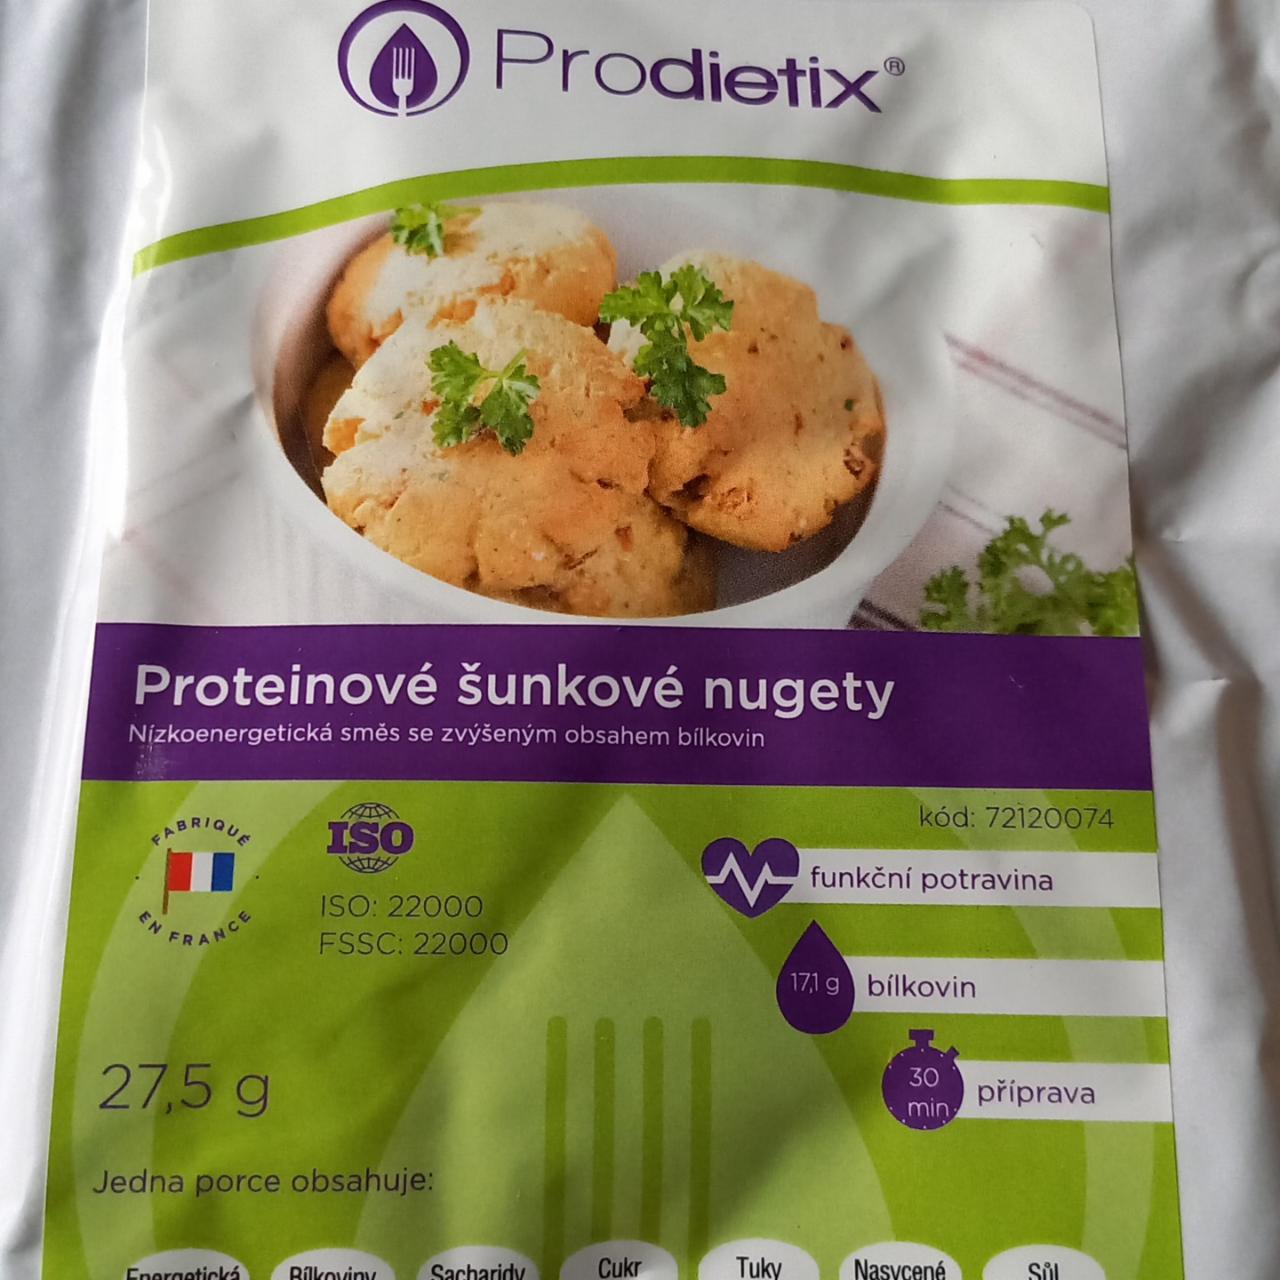 Fotografie - Proteinové šunkové nugety Prodietix